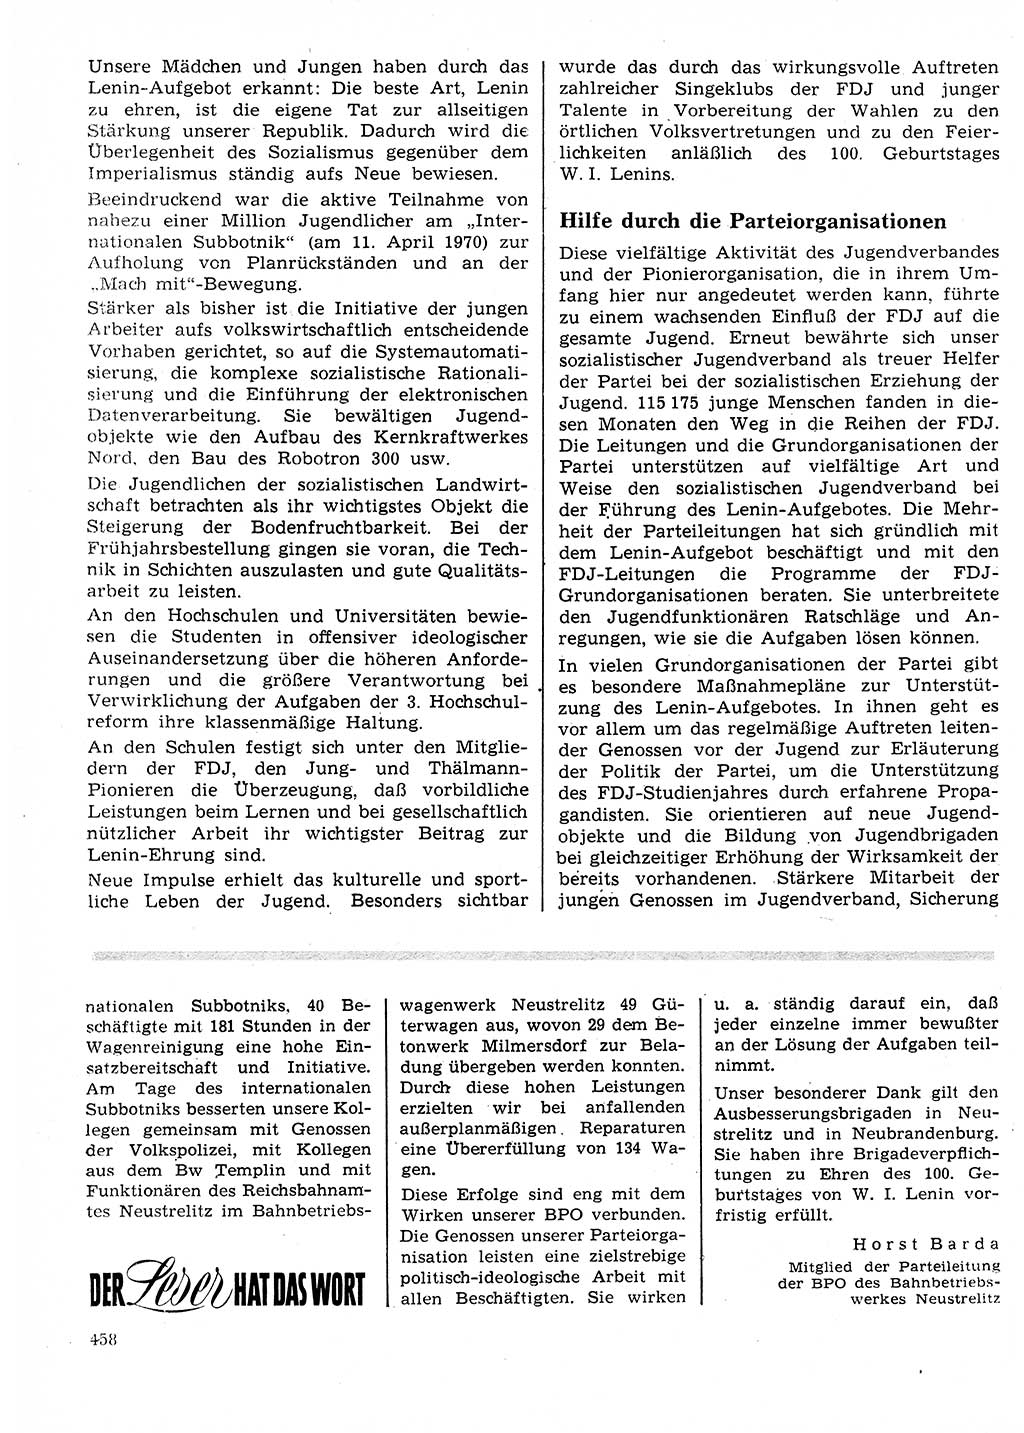 Neuer Weg (NW), Organ des Zentralkomitees (ZK) der SED (Sozialistische Einheitspartei Deutschlands) für Fragen des Parteilebens, 25. Jahrgang [Deutsche Demokratische Republik (DDR)] 1970, Seite 458 (NW ZK SED DDR 1970, S. 458)